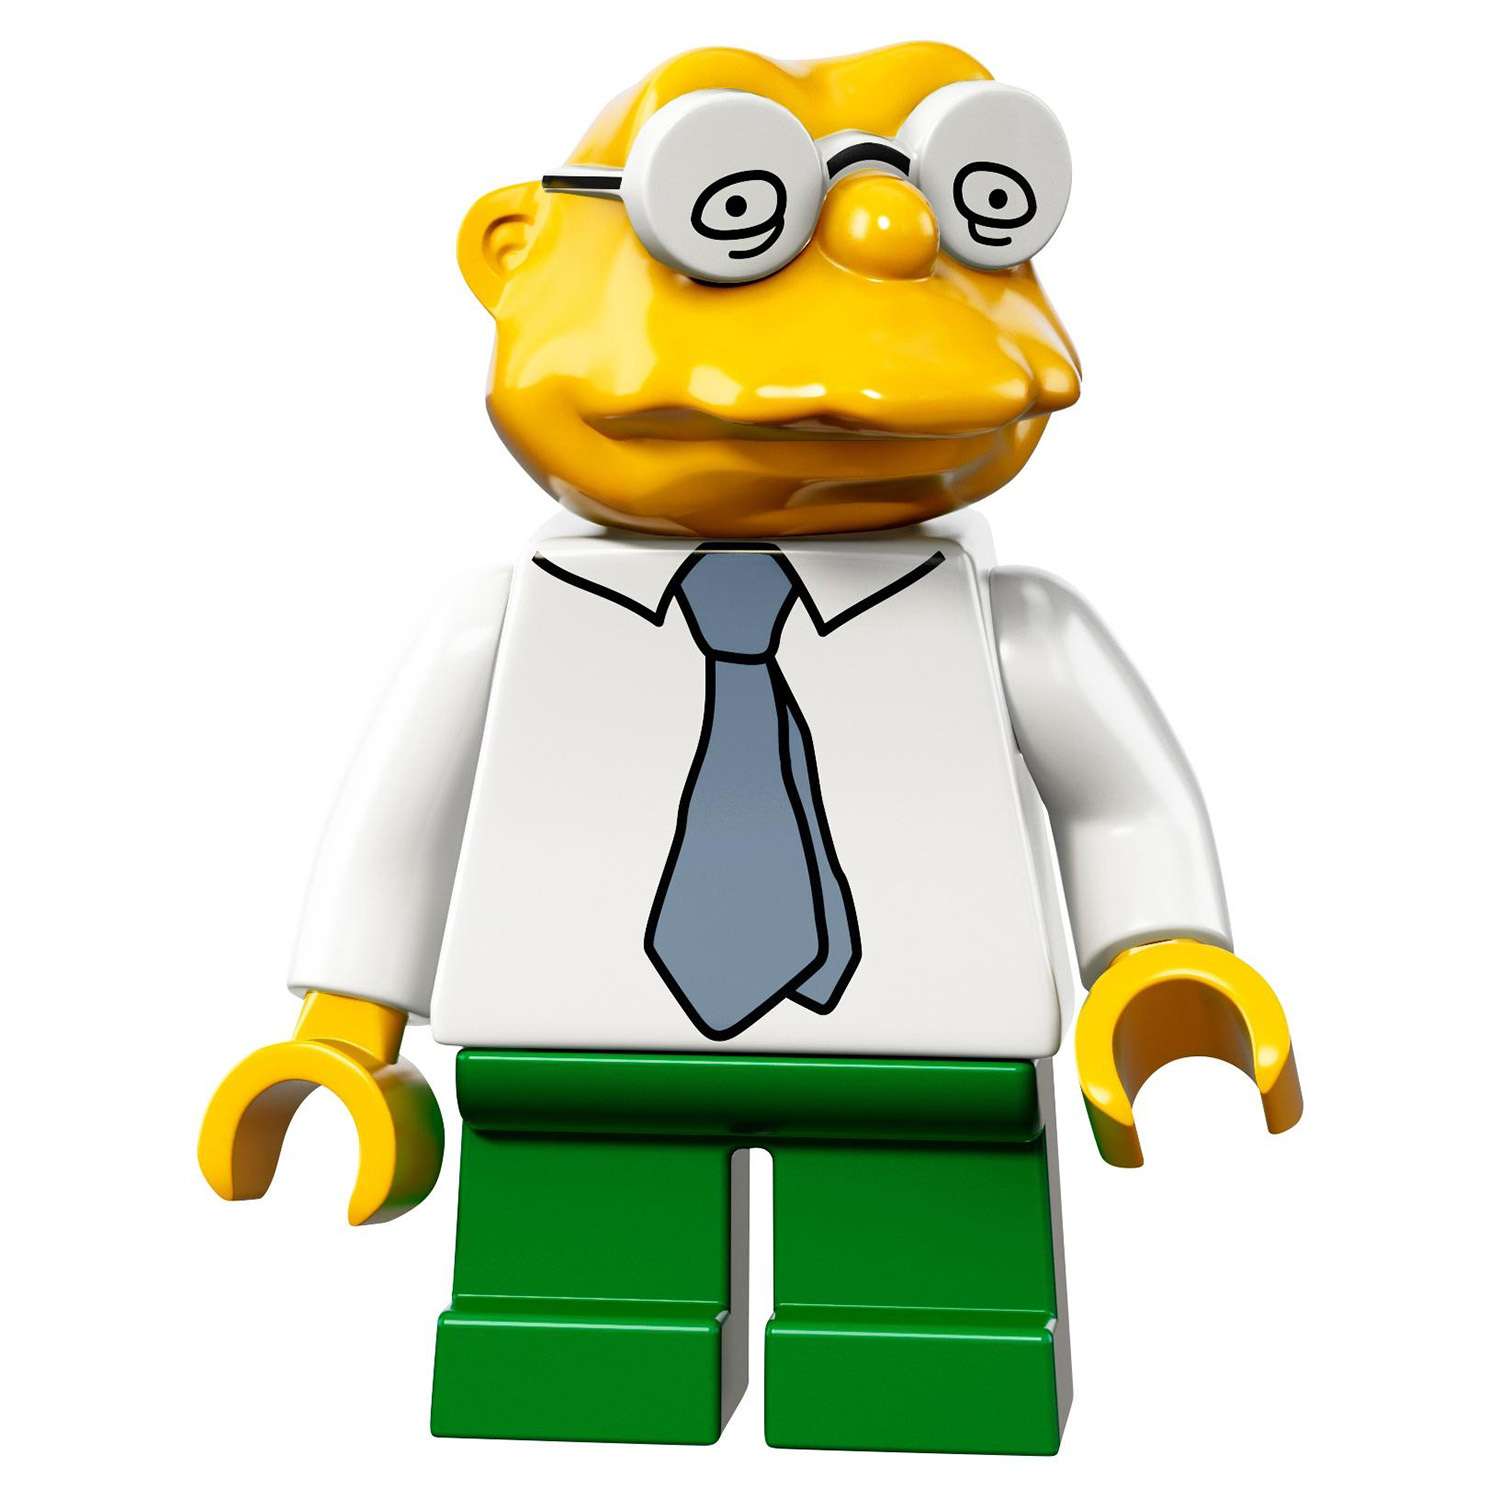 Конструктор LEGO Minifigures Минифигурки LEGO® Серия «Симпсоны» 2.0 (71009) - фото 31